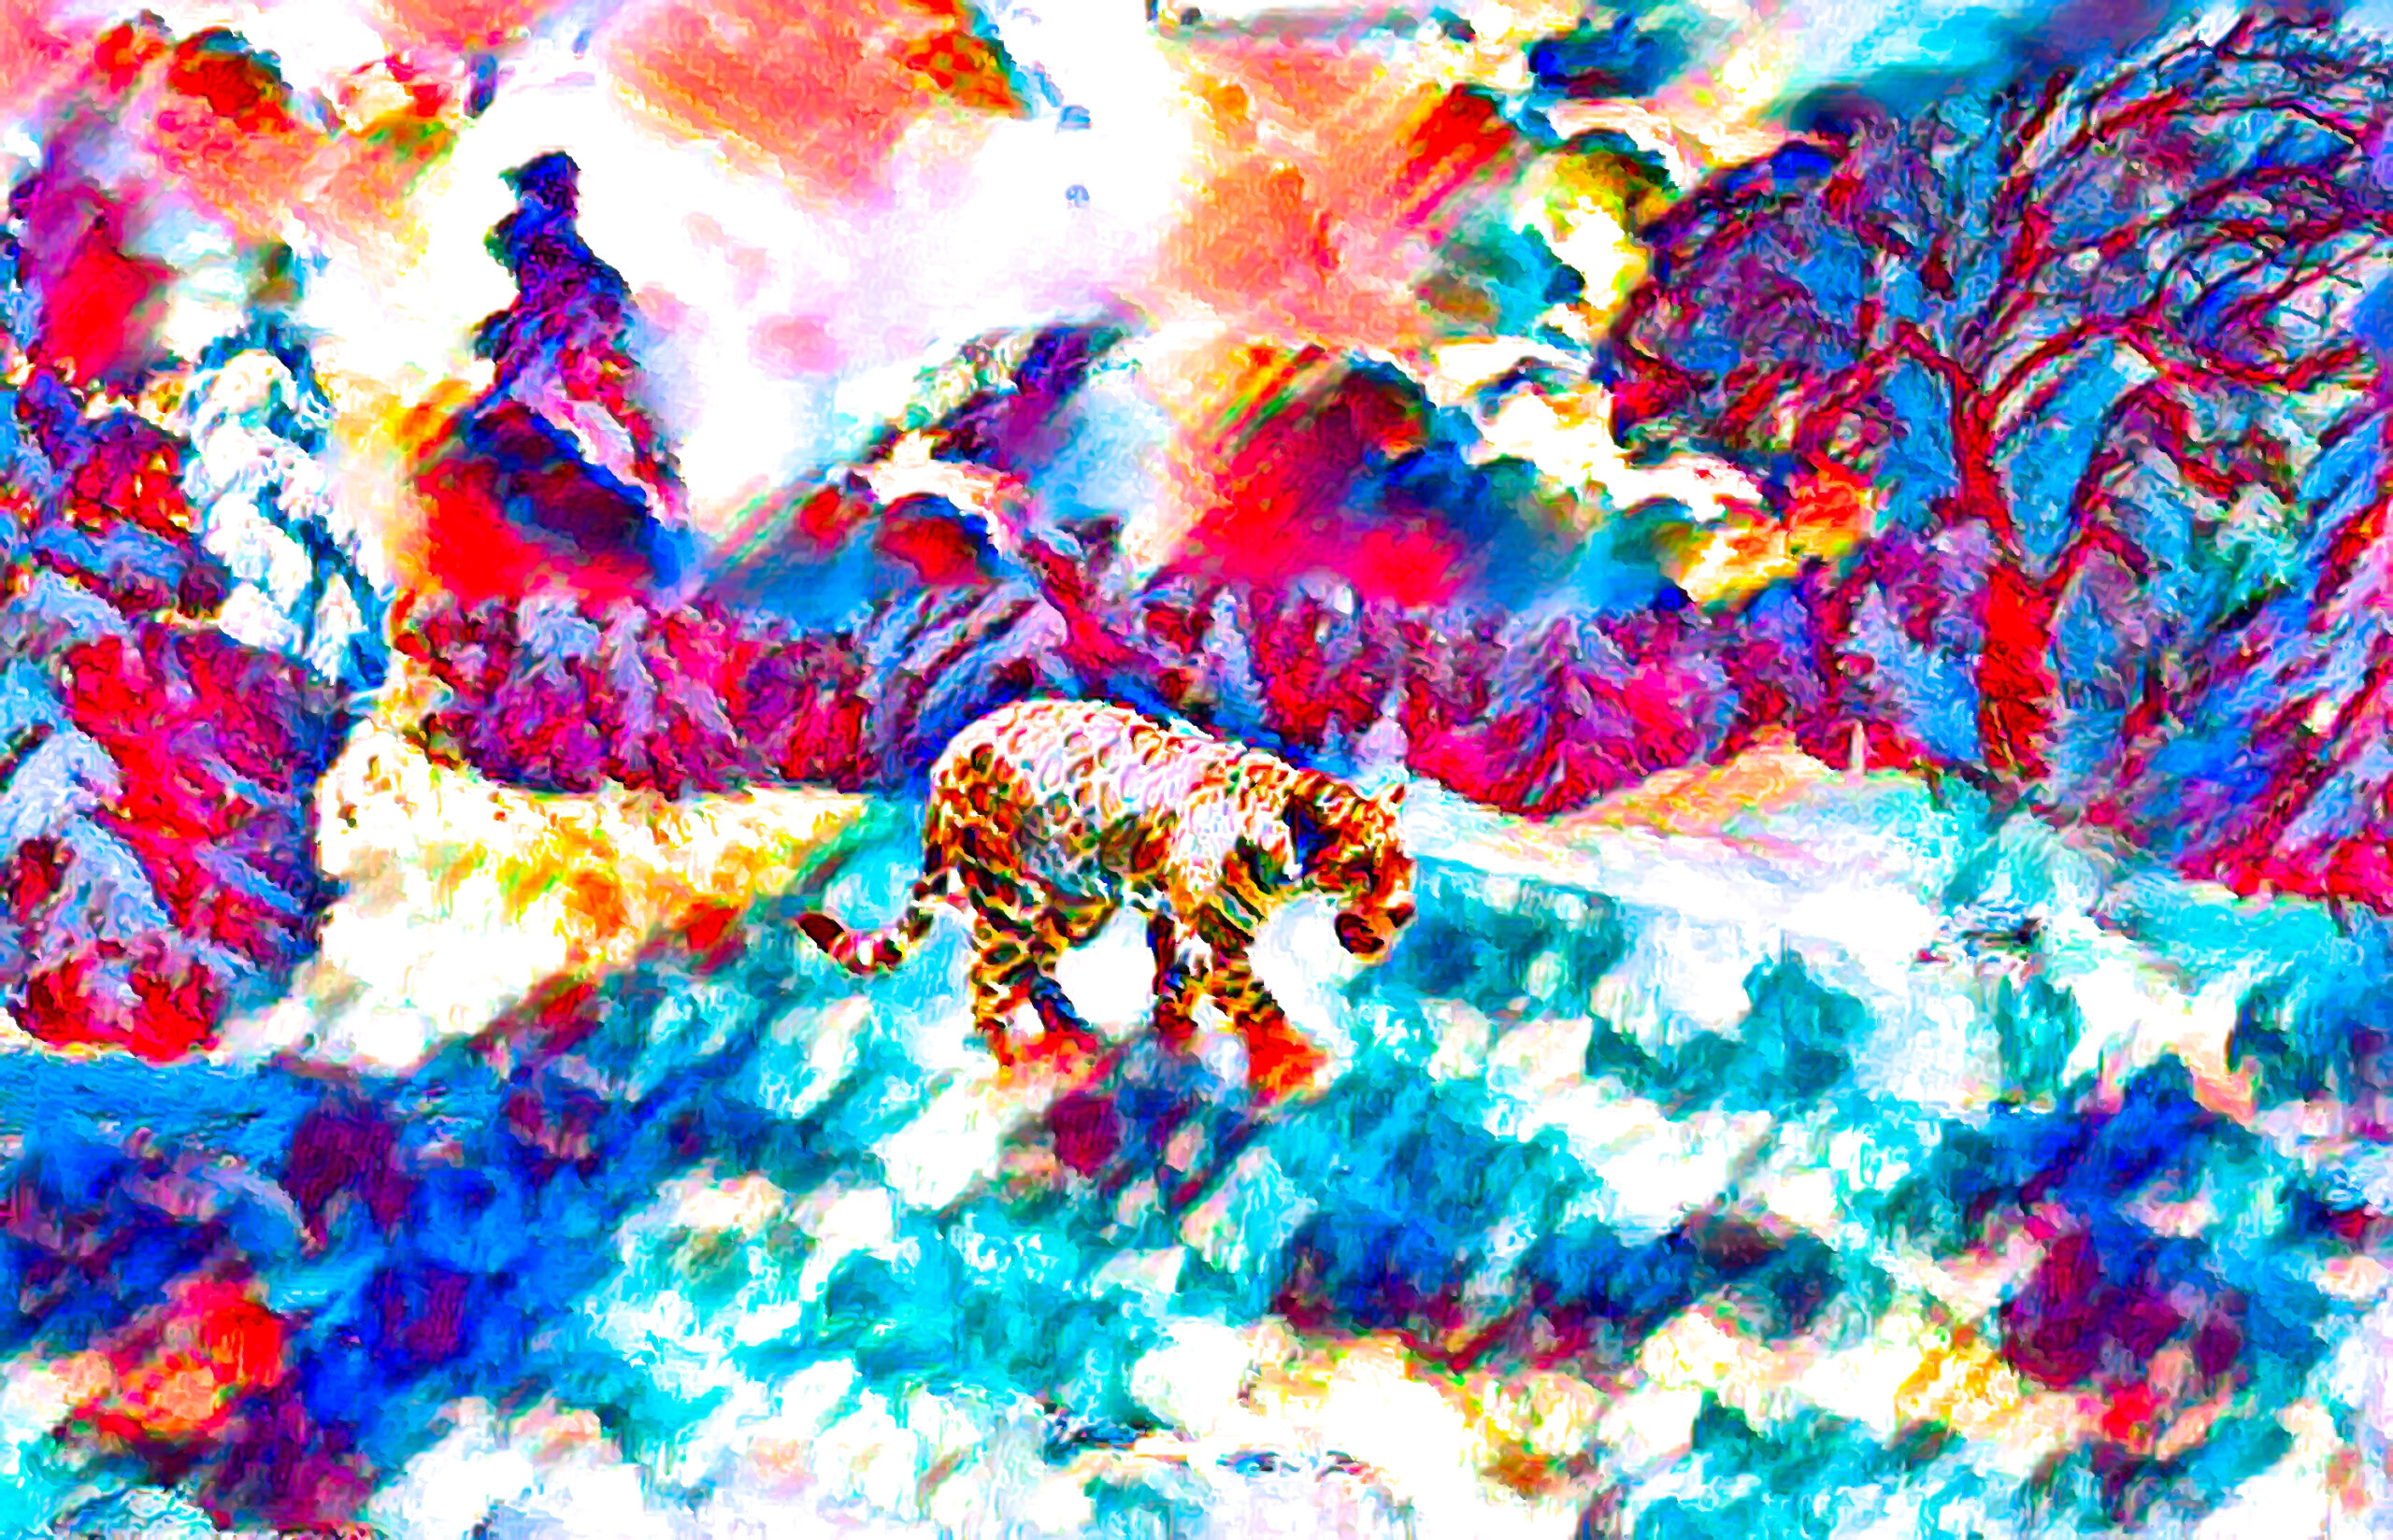 無料壁紙 背景画像 夜明けの雪山と豹のかっこいい印象 Free Illustlation くりえいてぃぶ